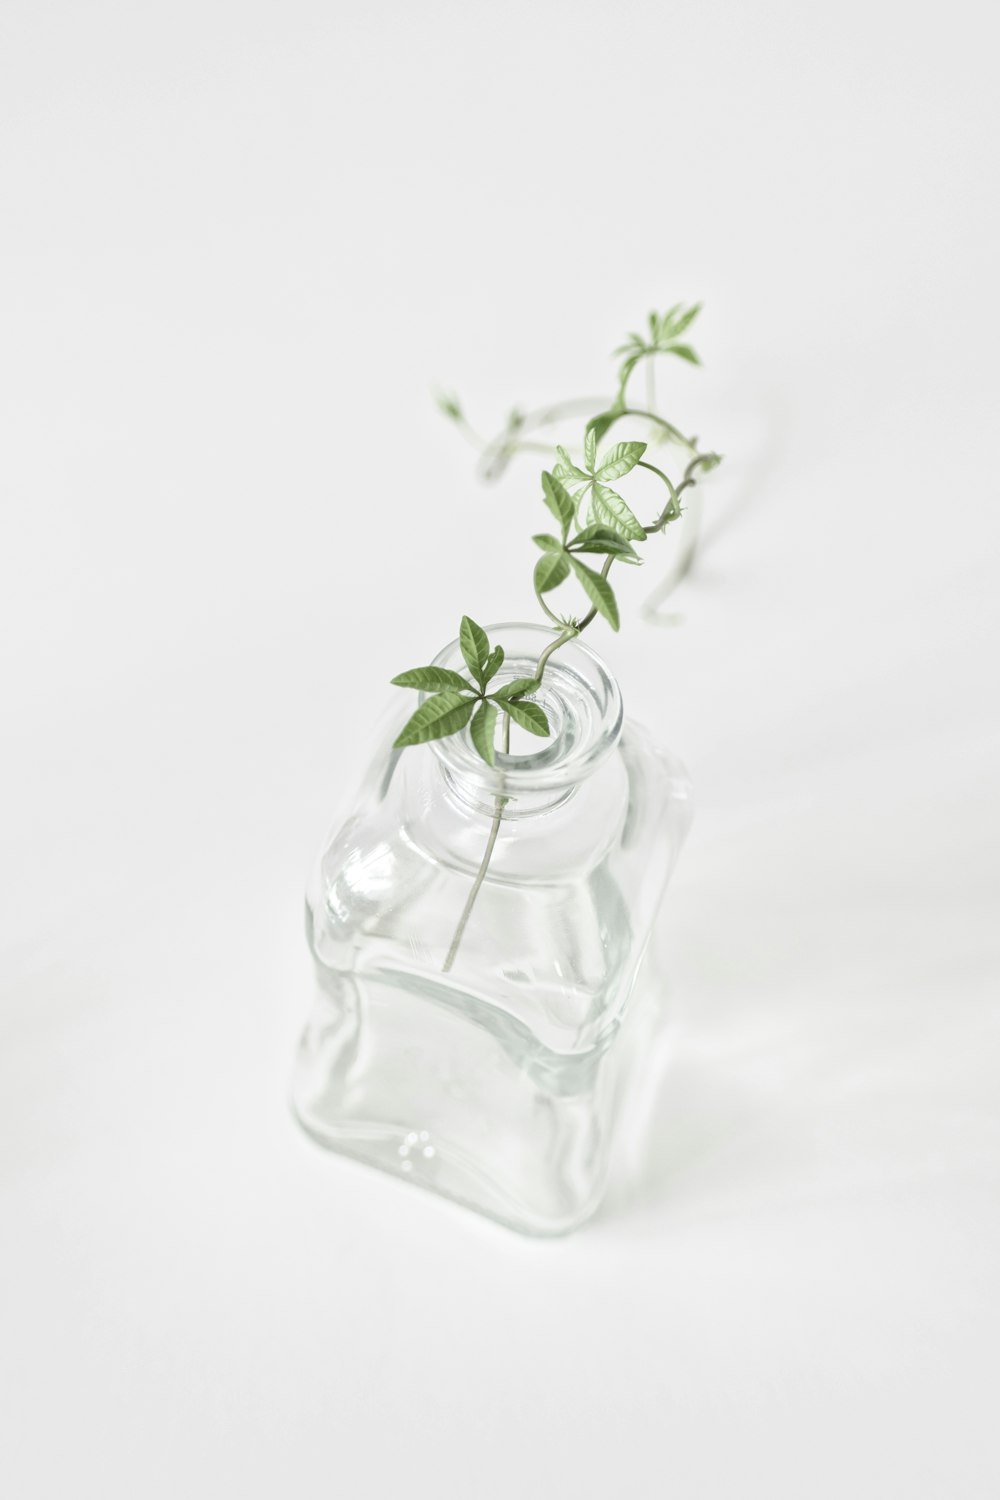 투명한 유리 병에 녹색 식물